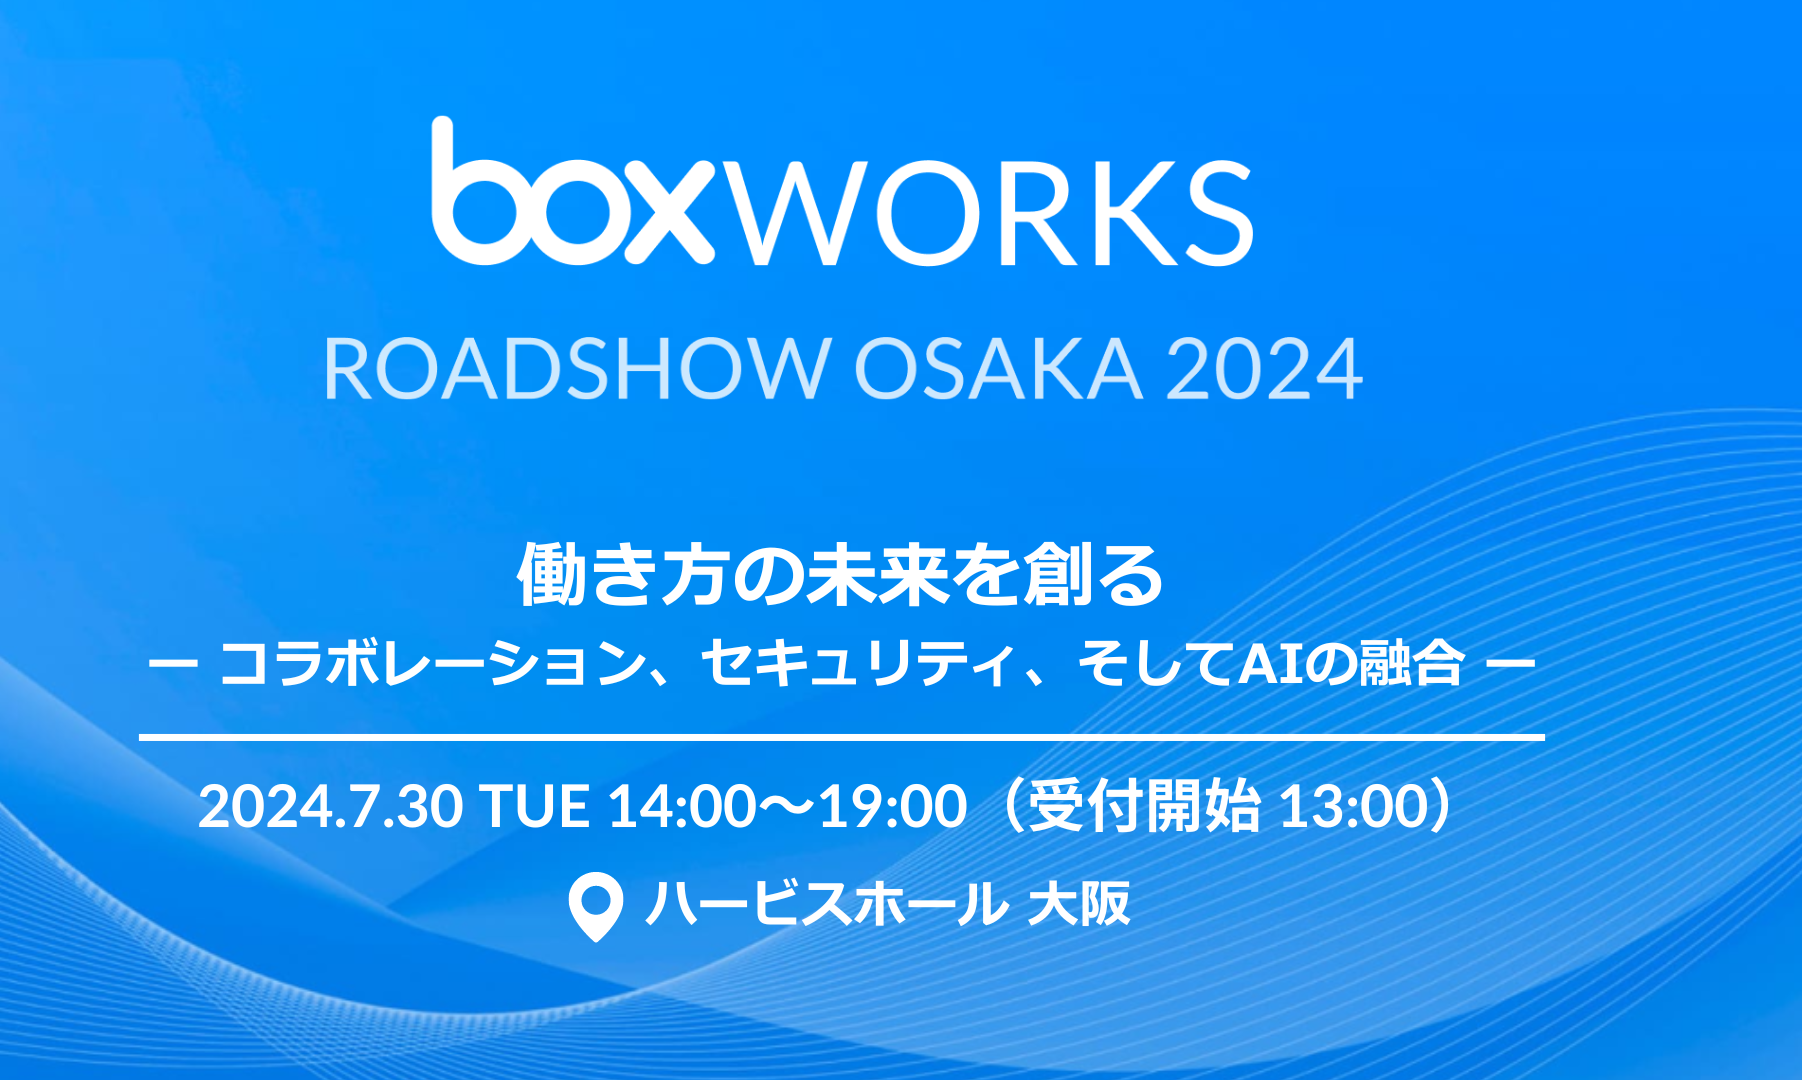 BoxWorks Roadshow Osaka 2024